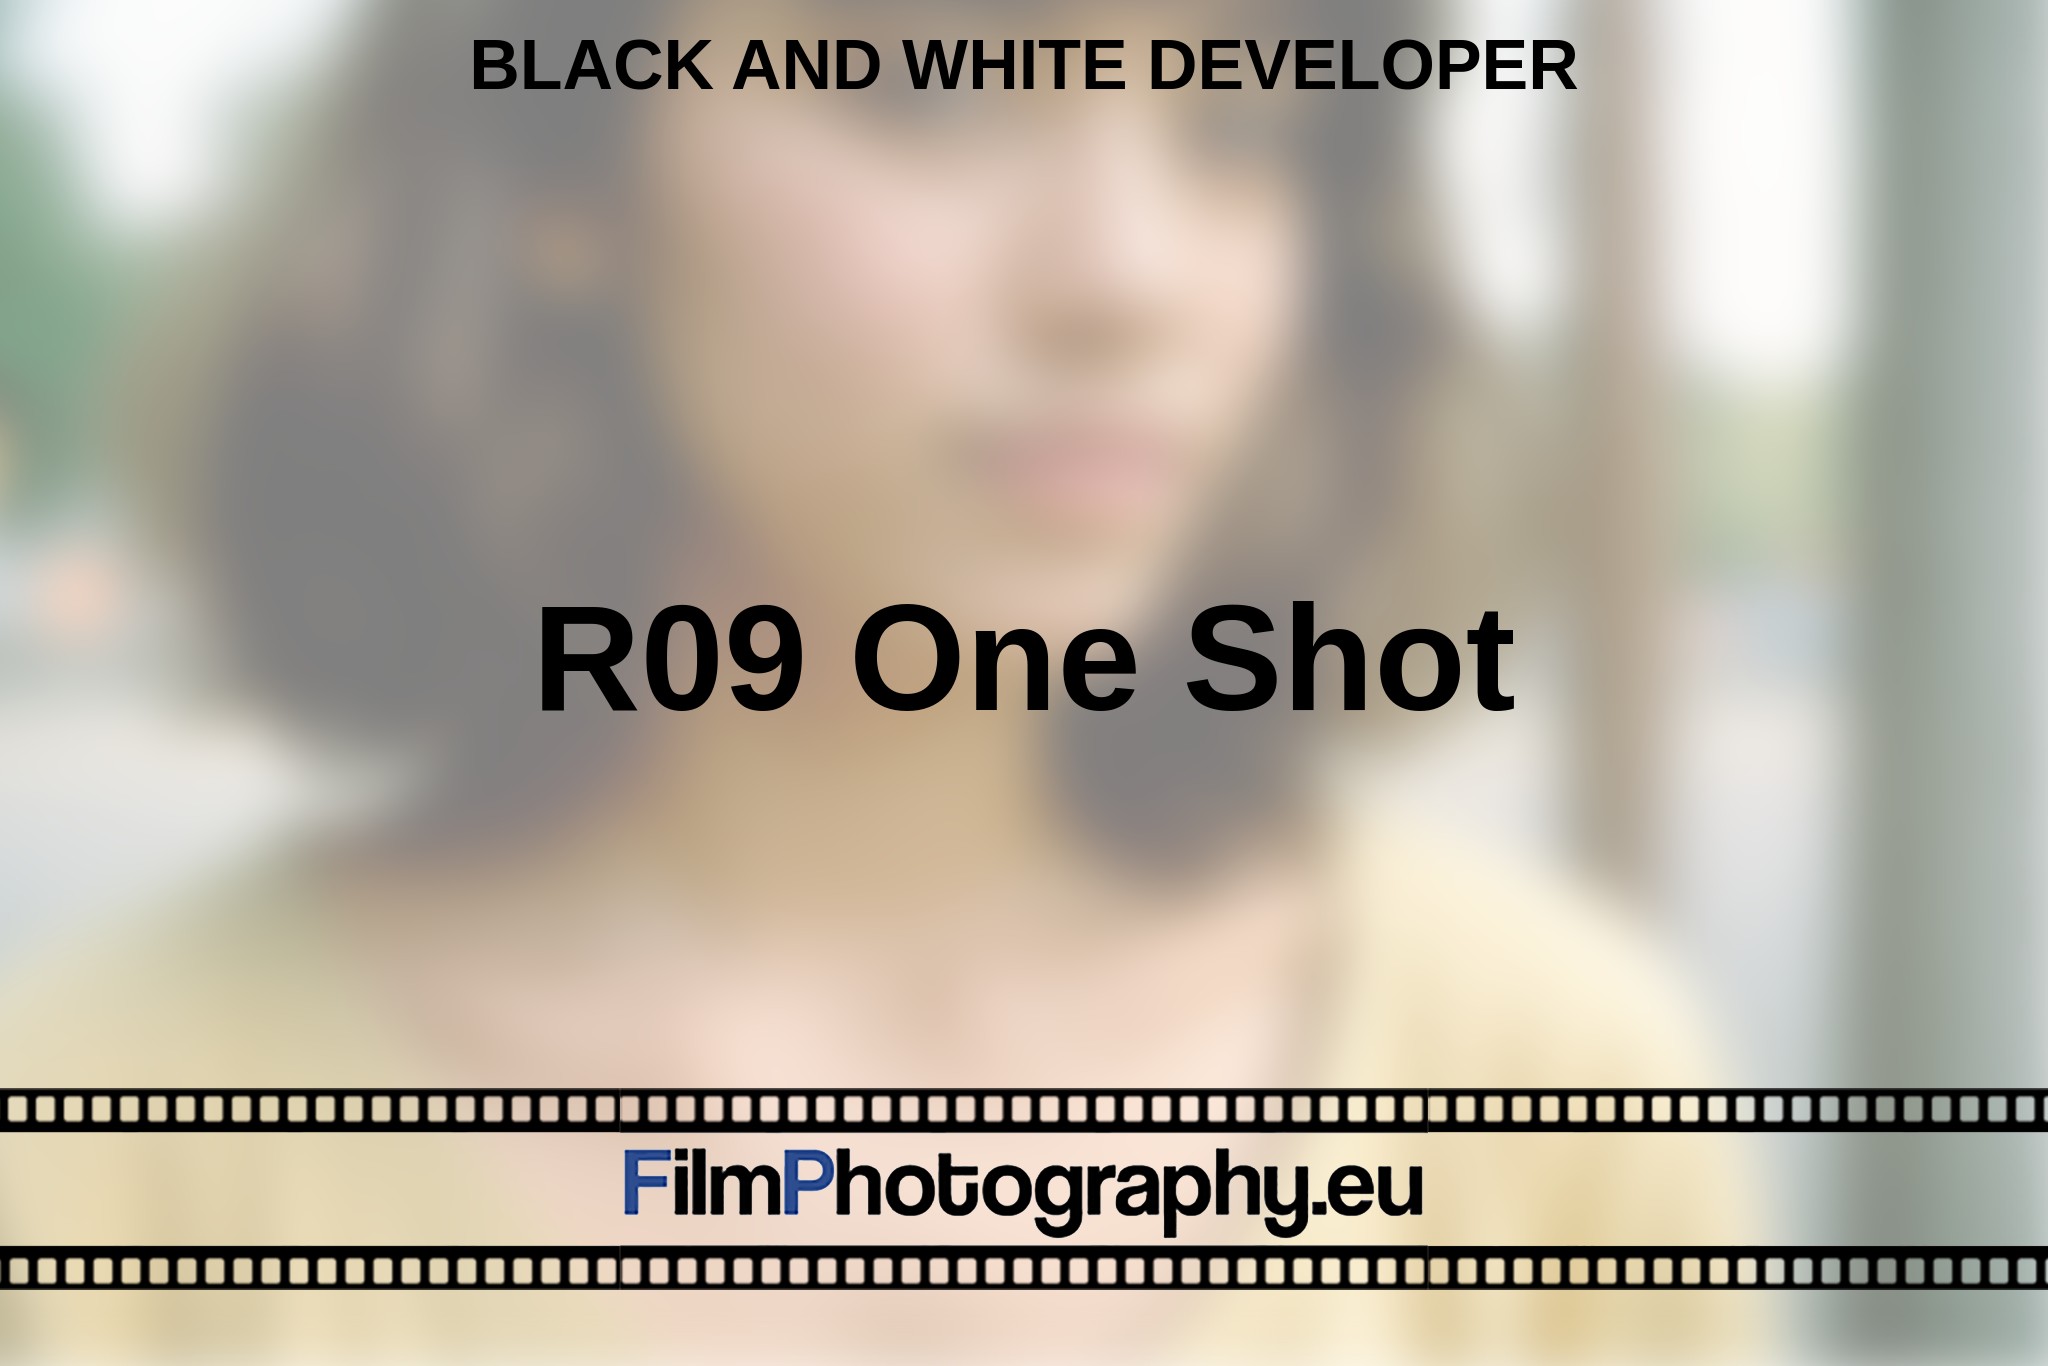 r09-one-shot-black-and-white-developer-en-bnv.jpg